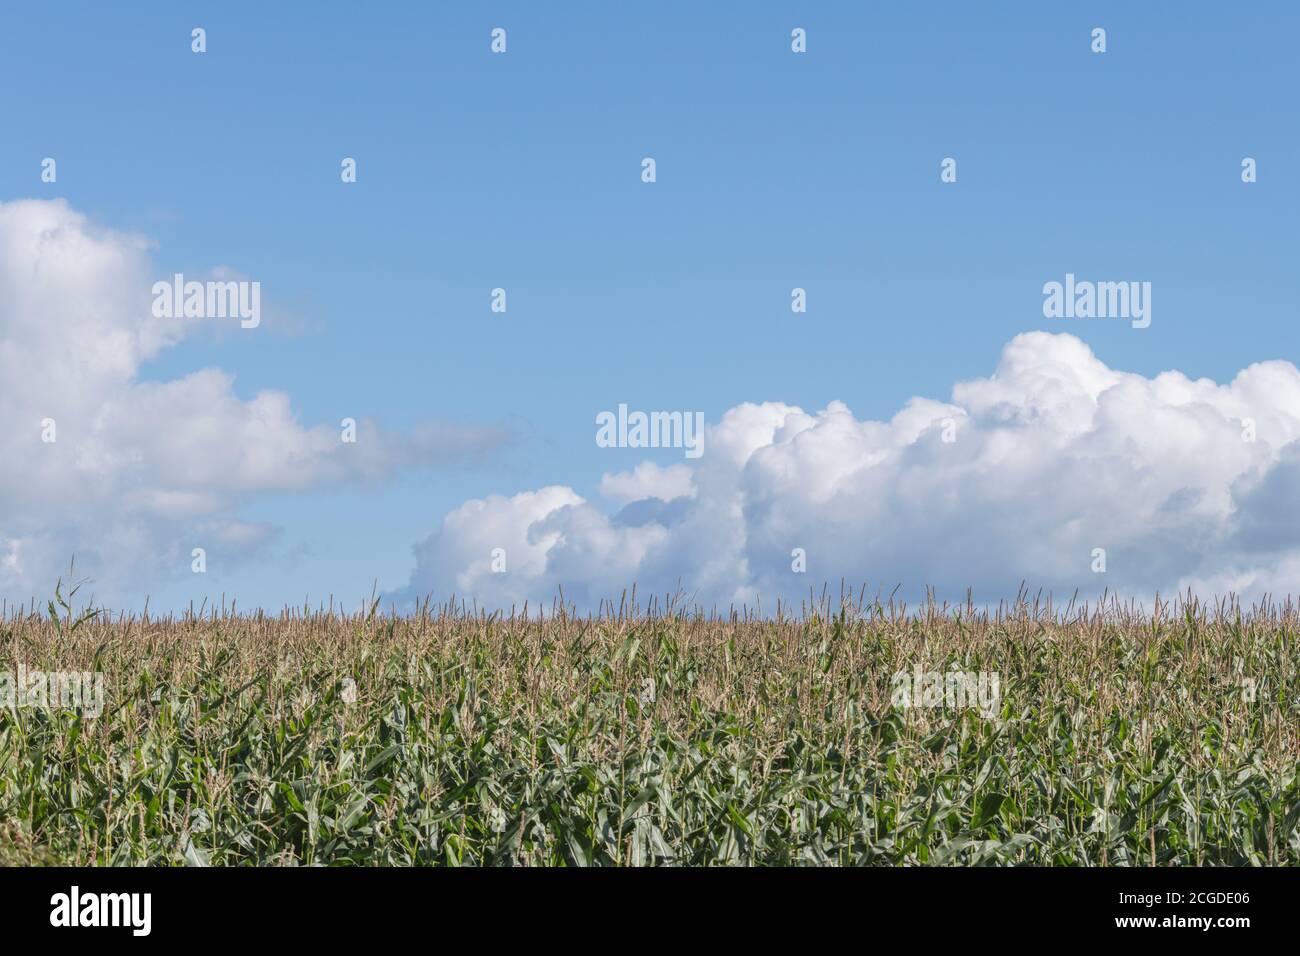 Mais / Sweetcorn / Zea mays Ernte wächst in Cornwall Feld mit blauen Sommerhimmel. Anbau von Mais in Großbritannien (als Tierfutter), Feld der Träume. Stockfoto